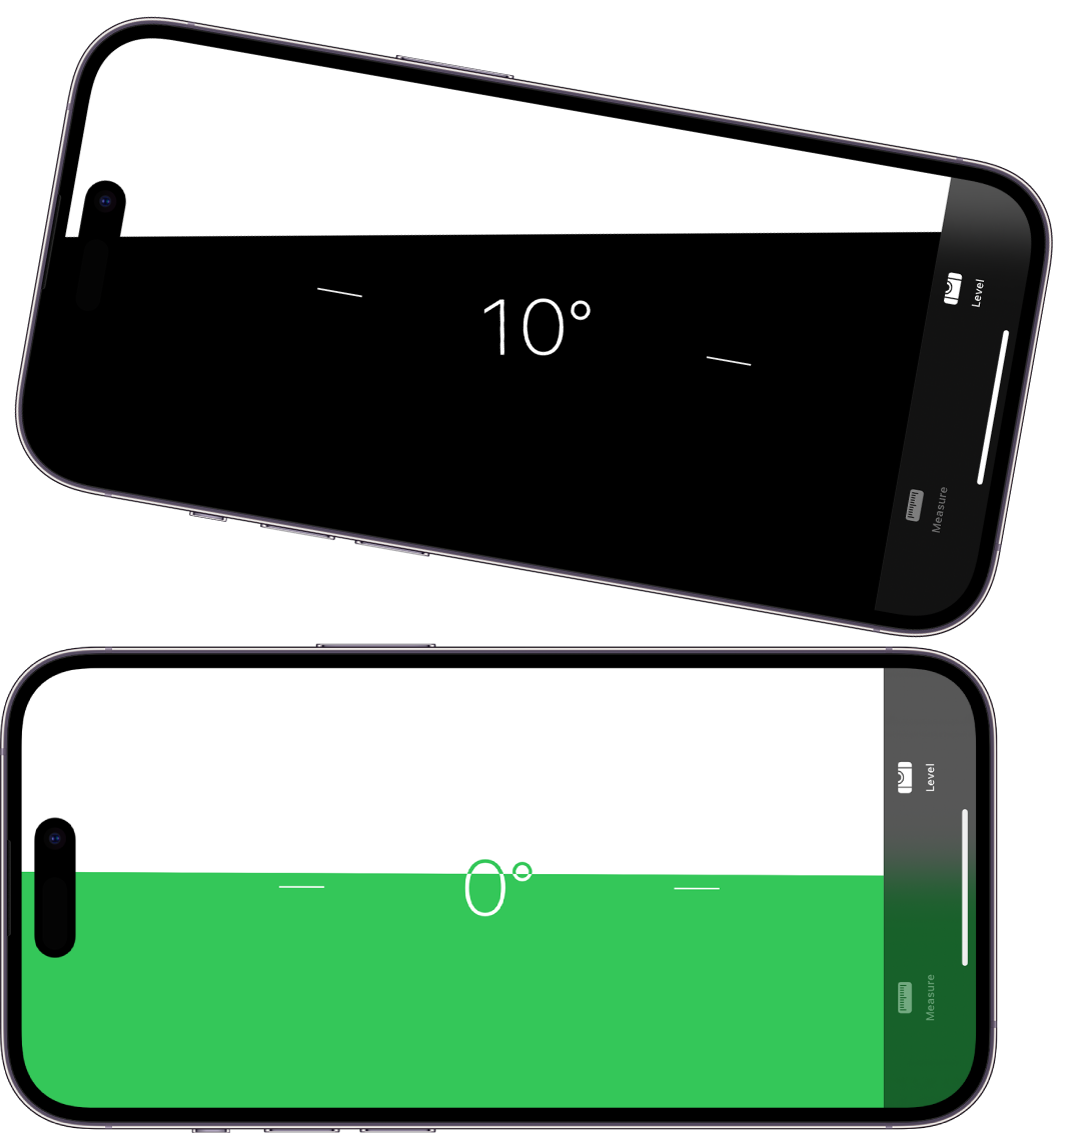 Екран либеле у апликацији Measure. Горња ивица iPhone-а је нагнута под углом од десет степени, док је доња ивица у равни.